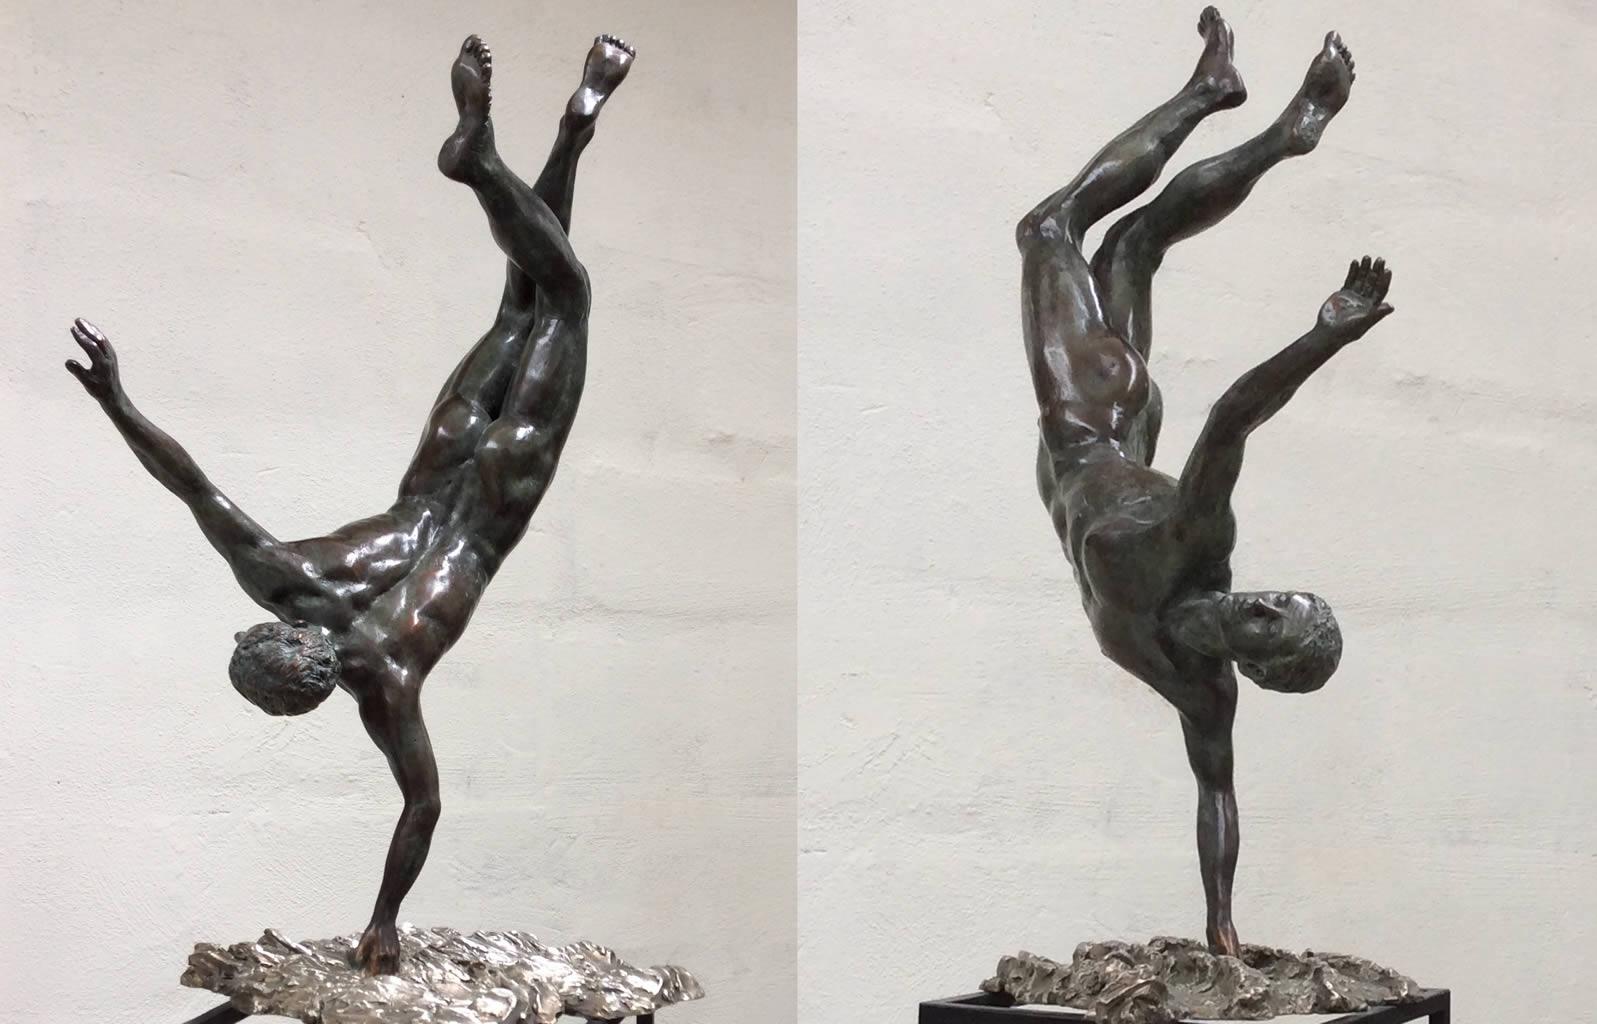 Zénith Sculpture en bronze Mythologie Classique Contemporain Figure masculine nue. Les dimensions comprennent le piédestal.

Les sculptures de Margot Homan (1956, Oss, Pays-Bas) témoignent d'une parfaite maîtrise de l'art ancien du modelage et de la